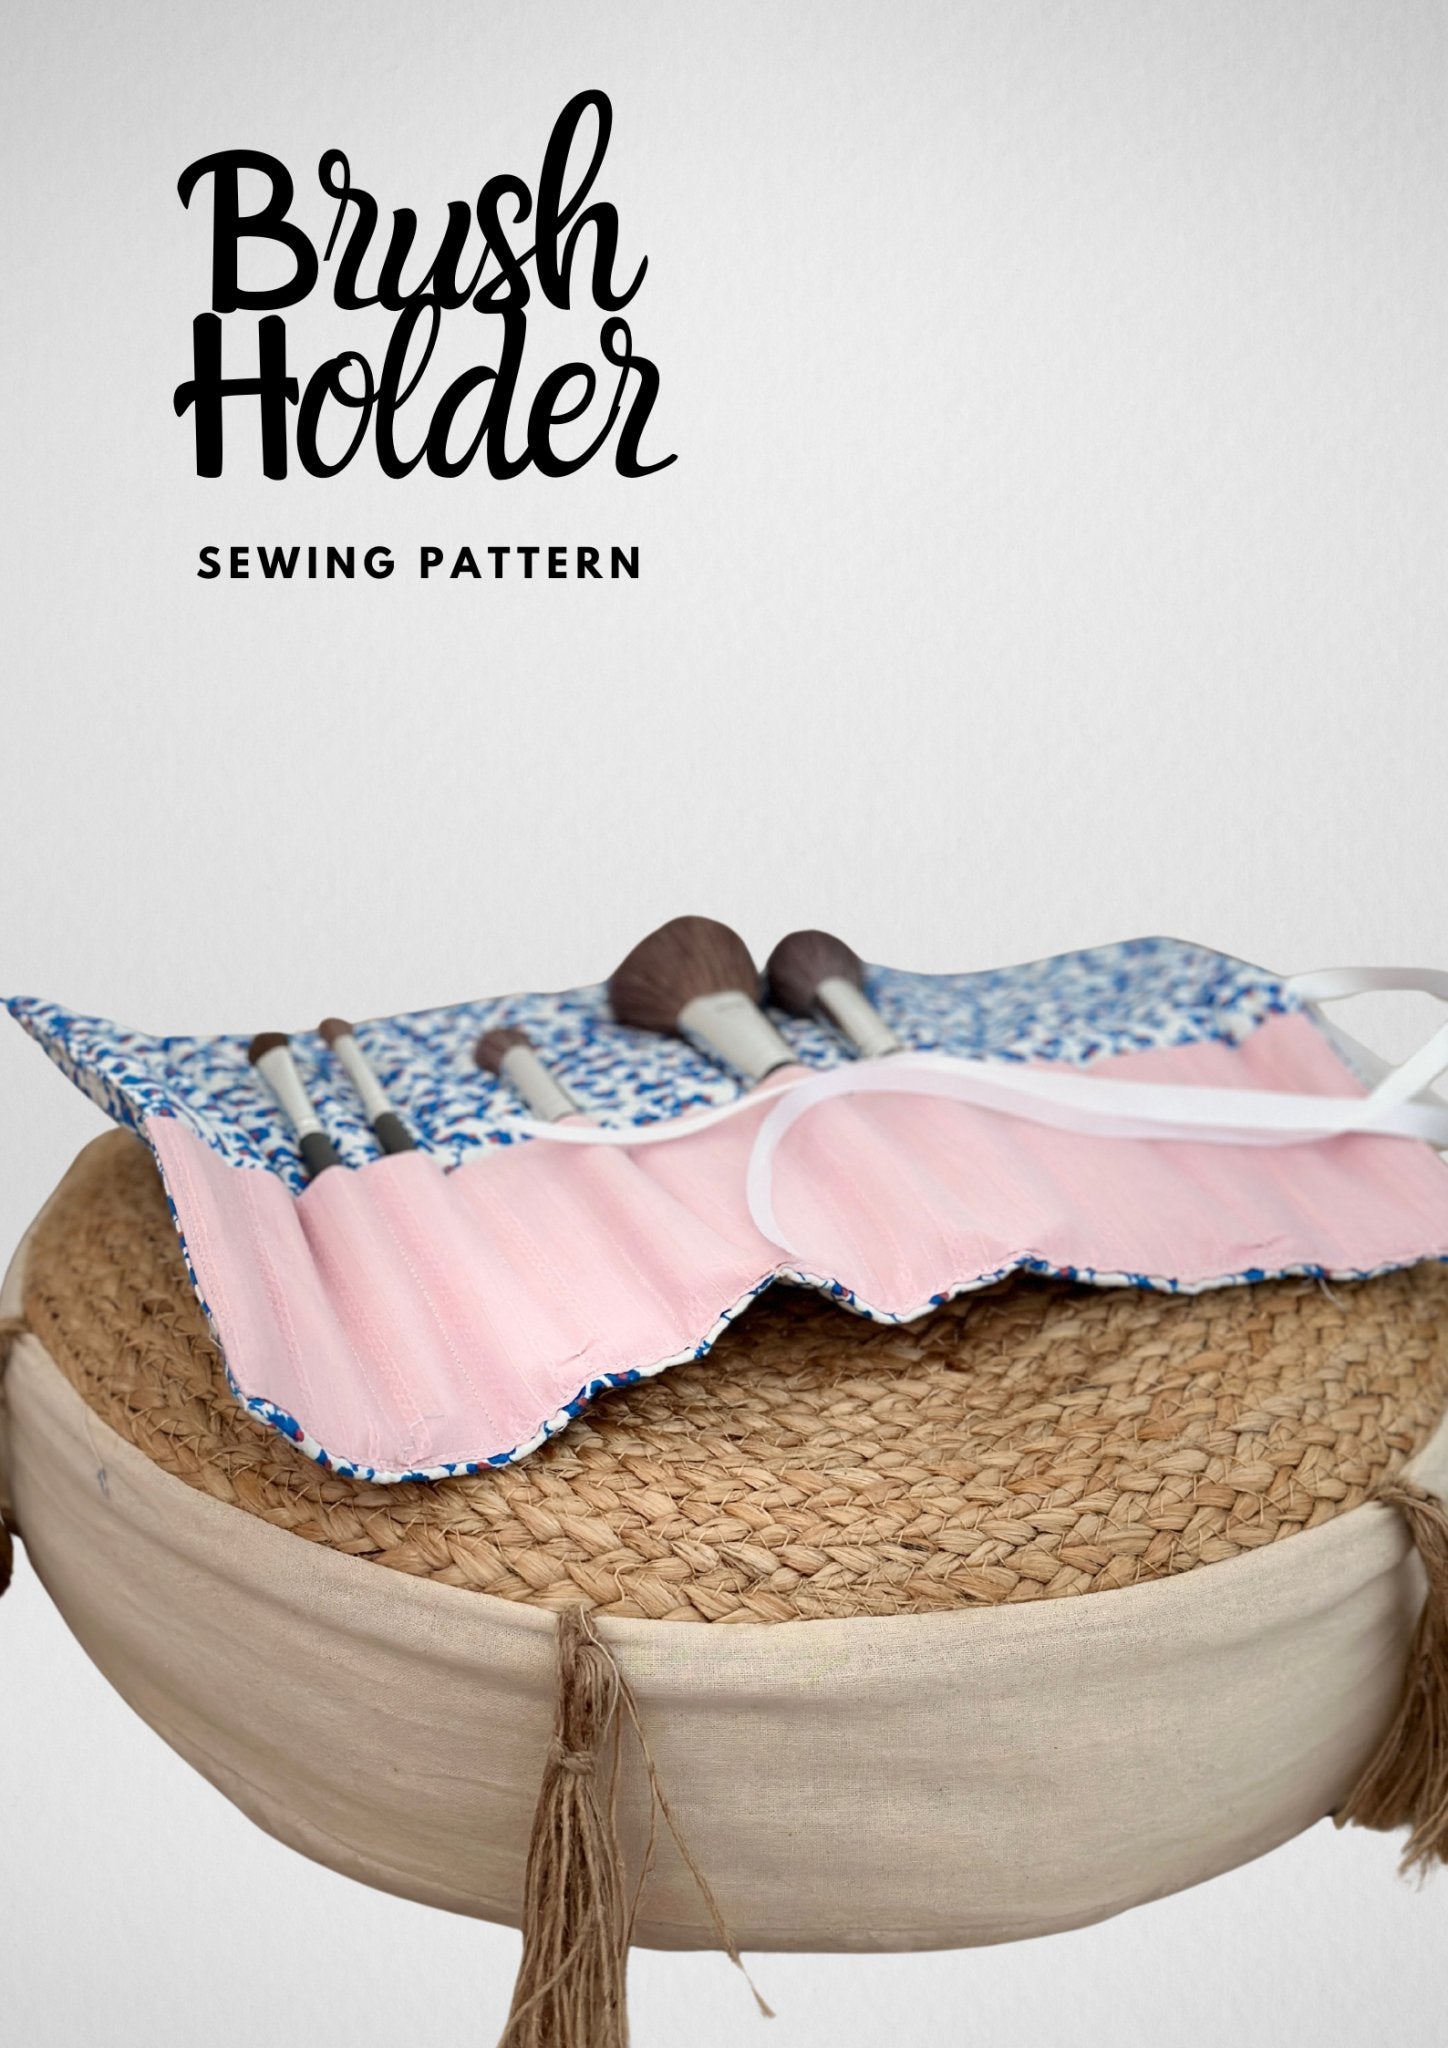 Brush Holder Sewing Pattern - Friedlies